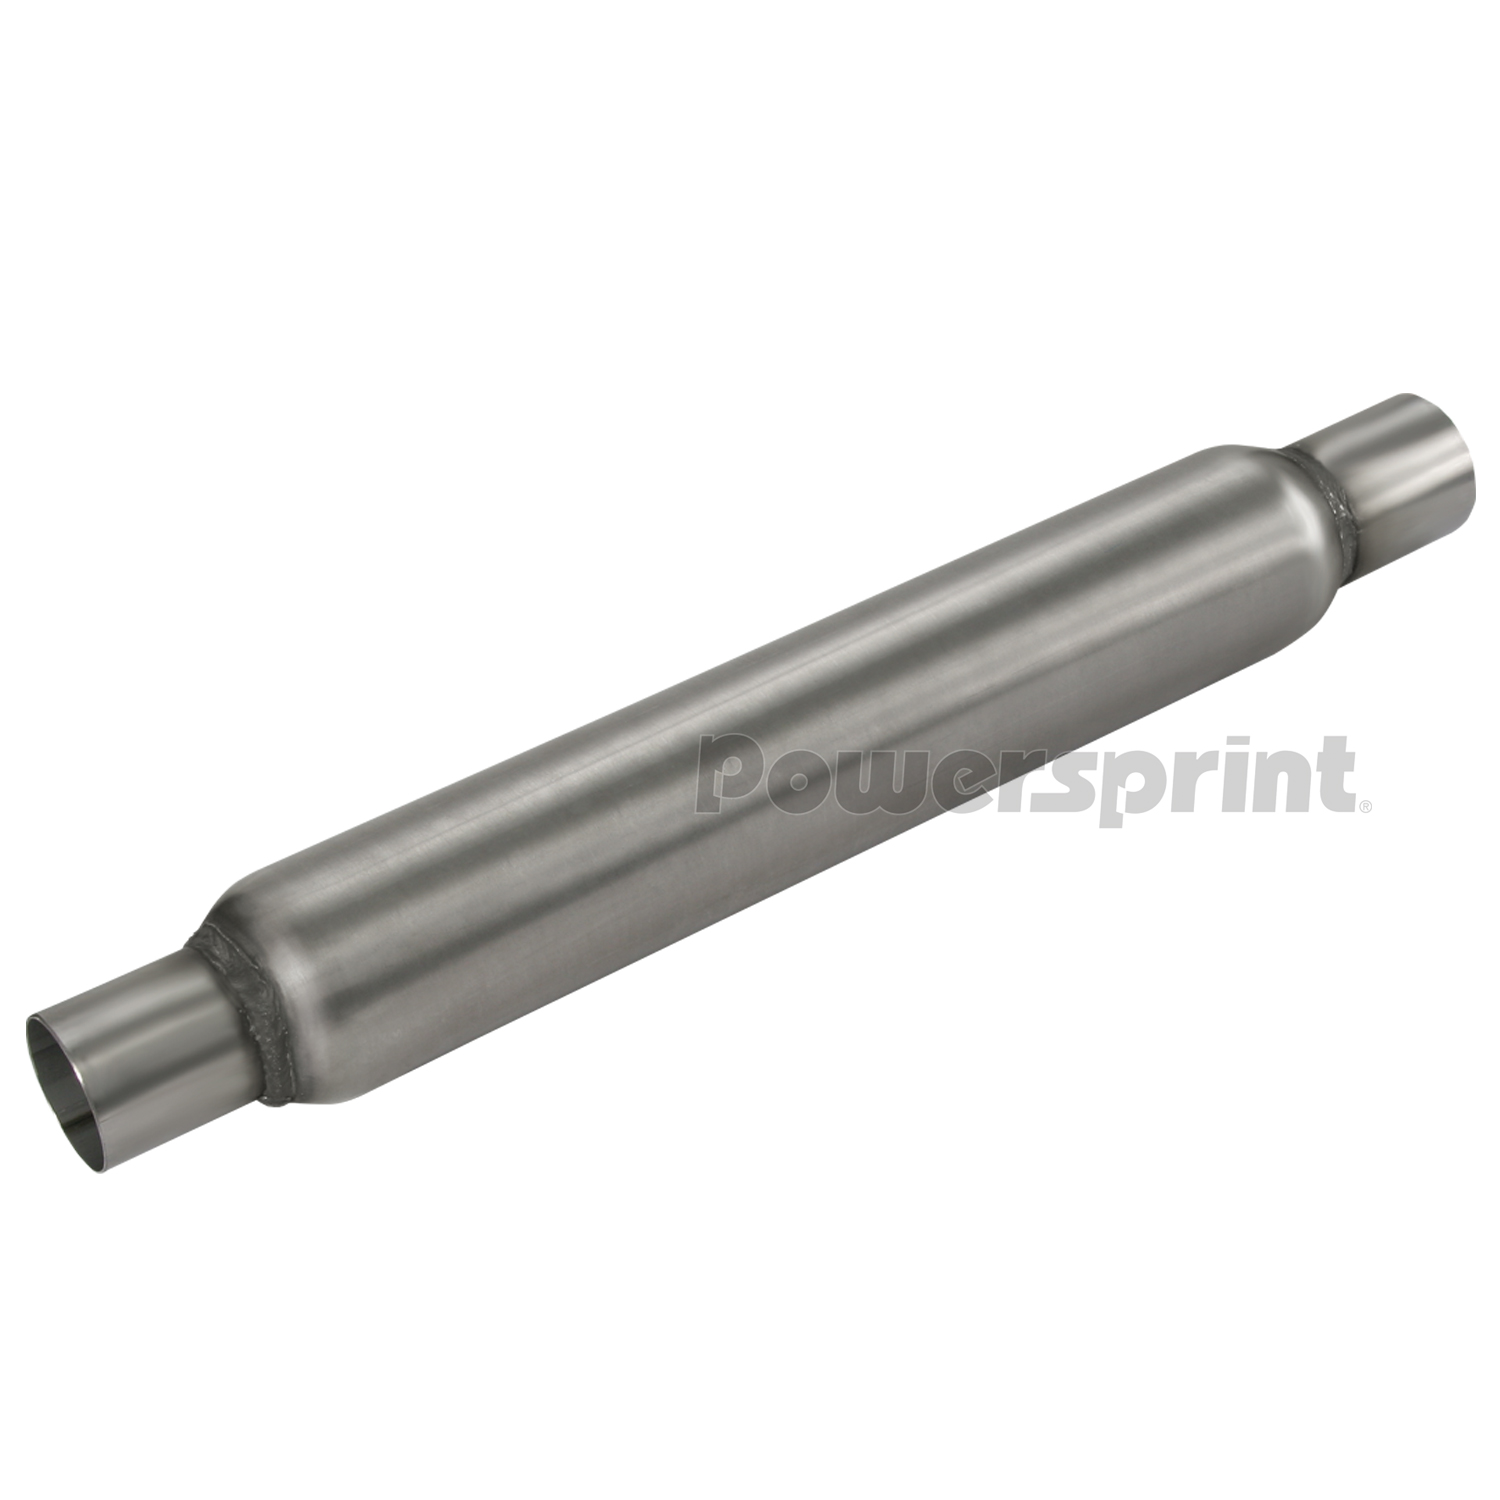 Powersprint Absorber-Rohr gelocht 500 mm Durchmesser 50 mm 